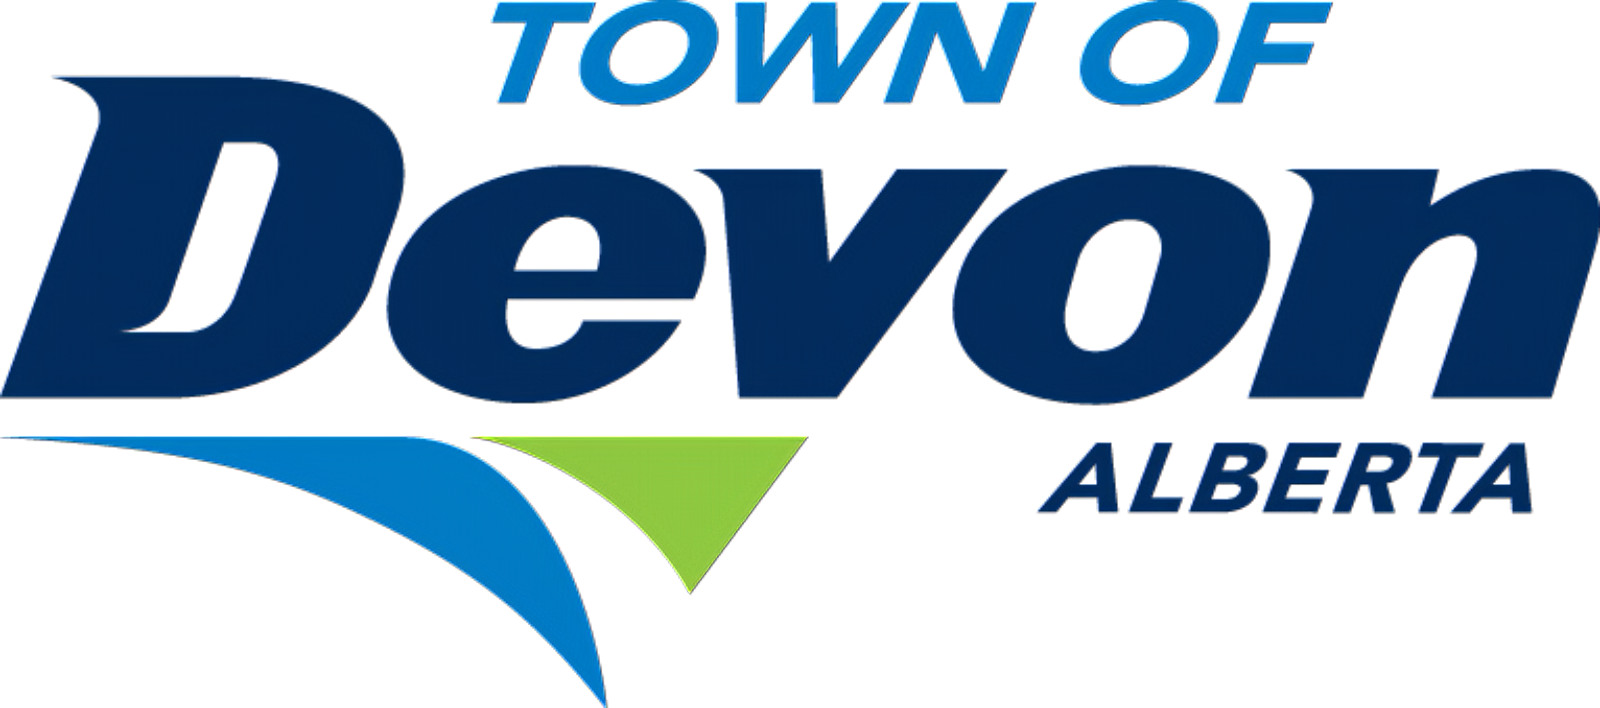 Town of Devon